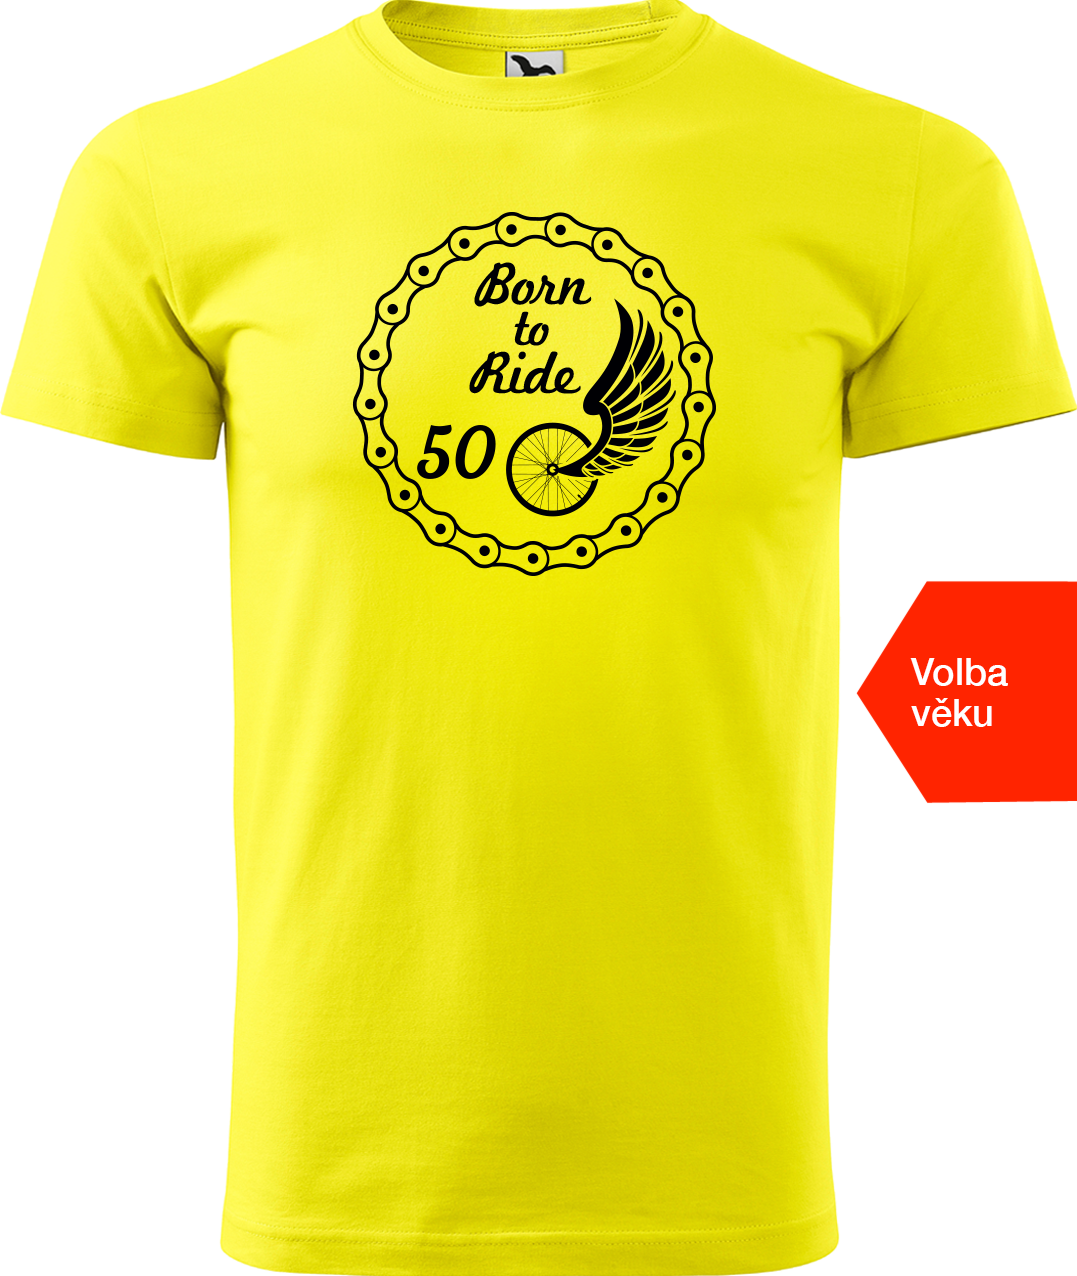 Pánské tričko pro cyklistu s věkem - Born to Ride (wings) Velikost: 4XL, Barva: Žlutá (04)